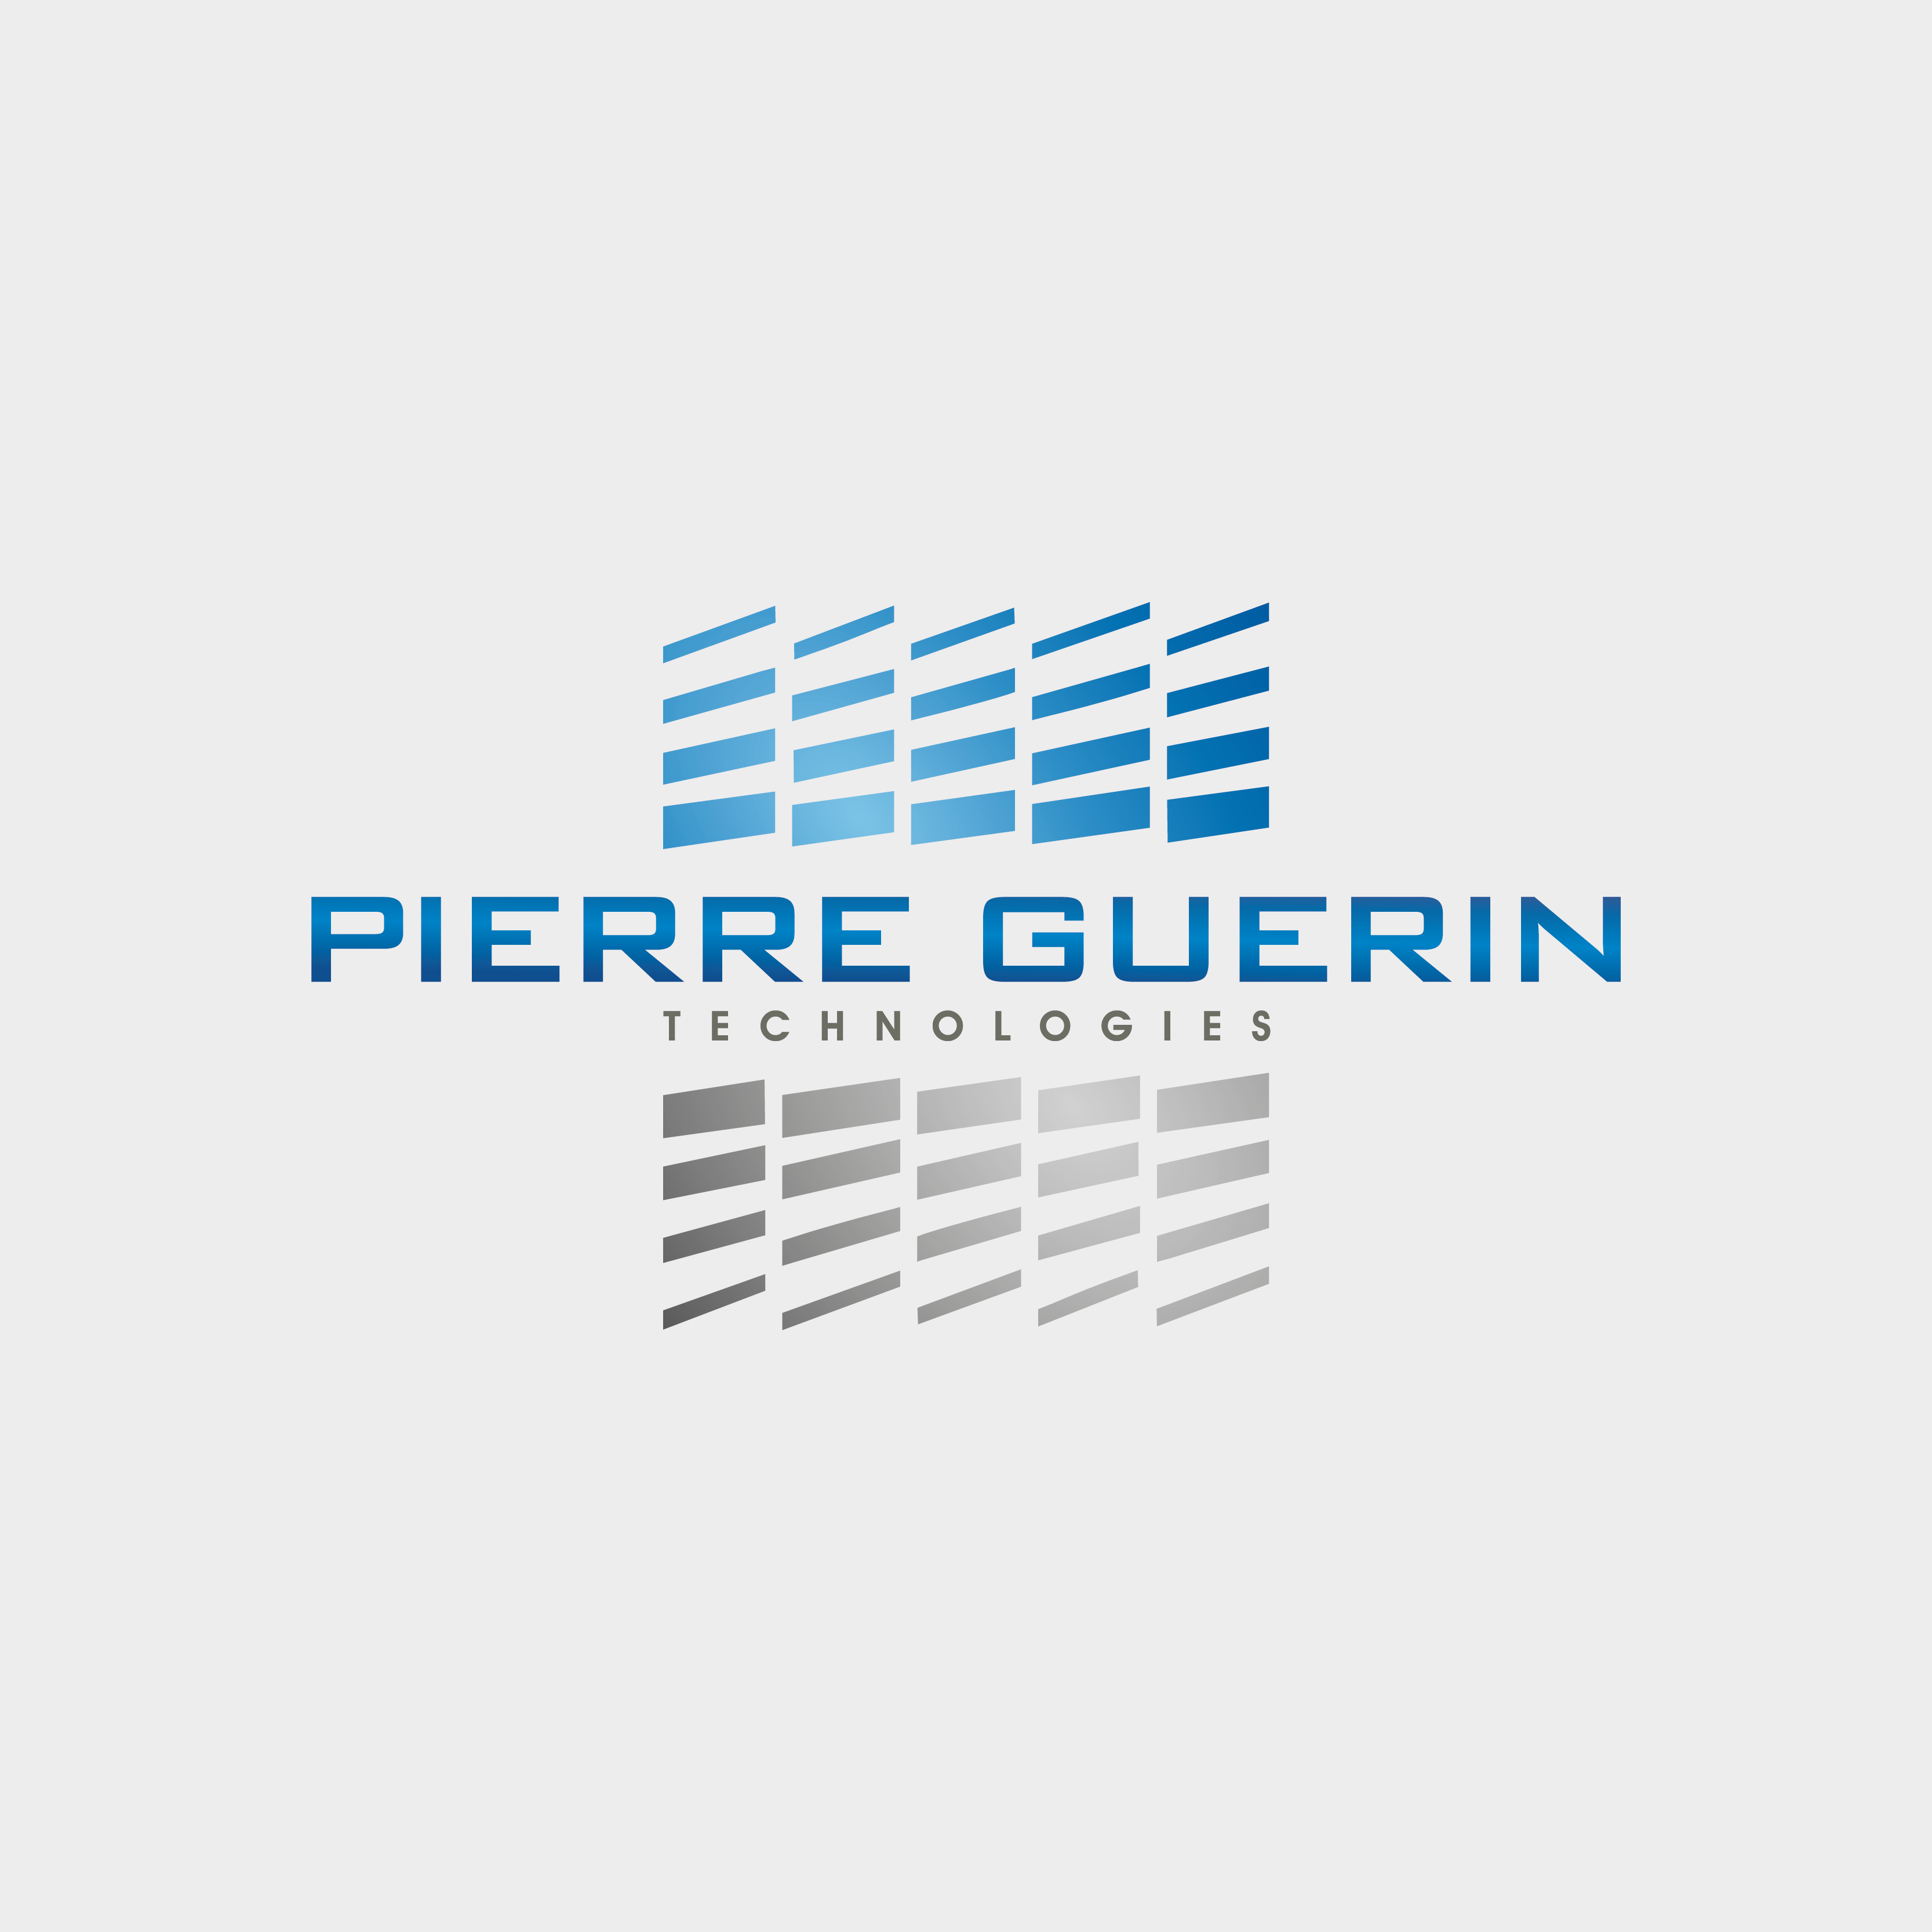 PIERRE GUERIN Technologies